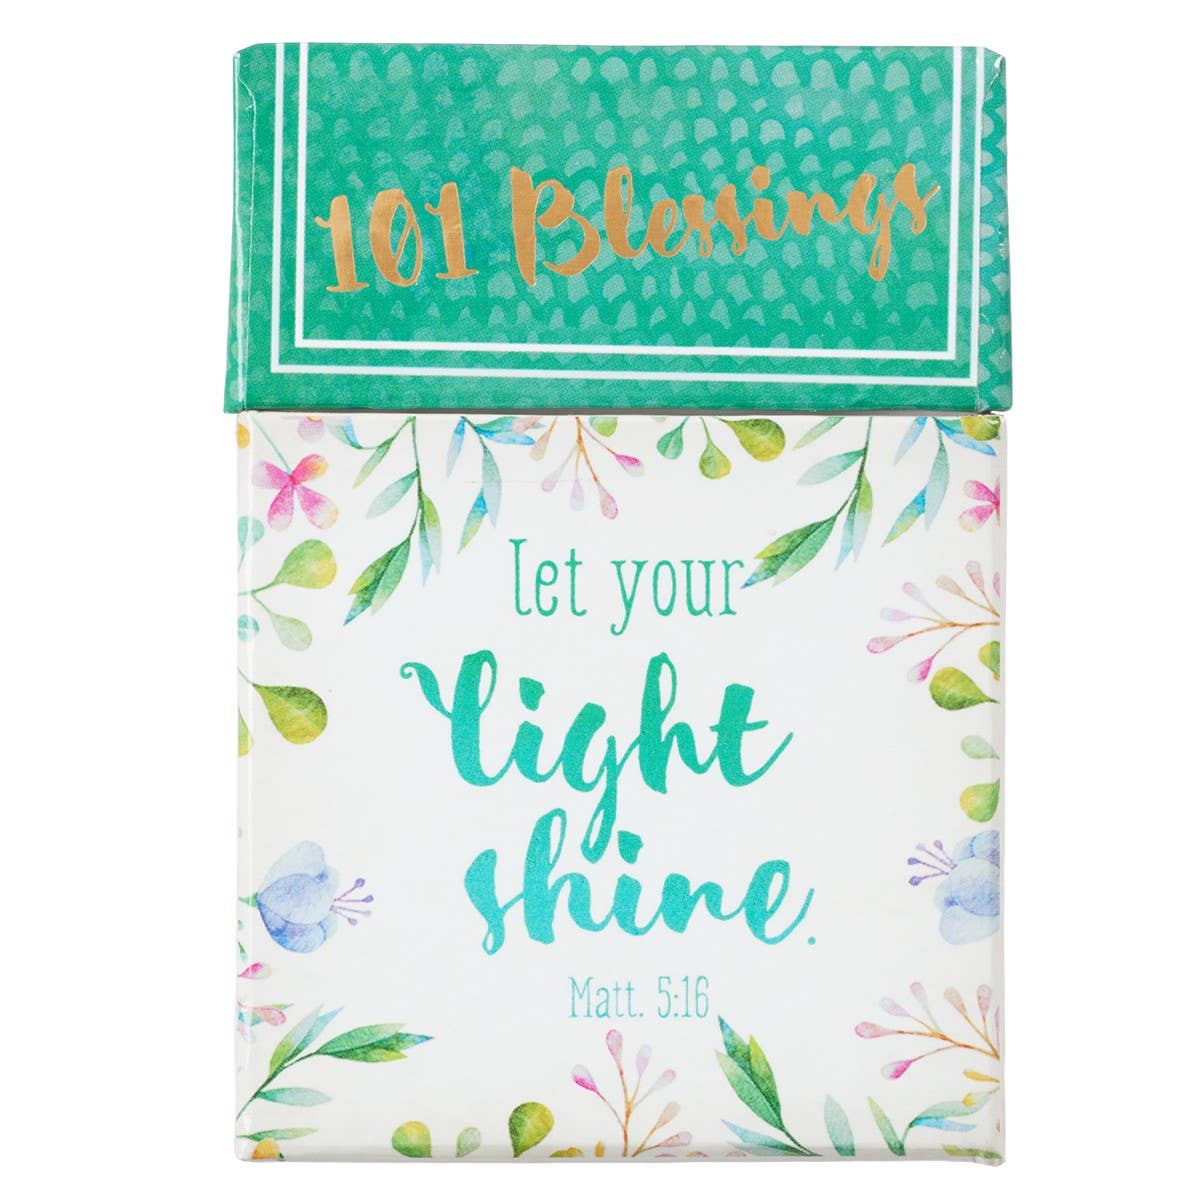 101 Blessings Let Your Light Shine - Matthew 5:16